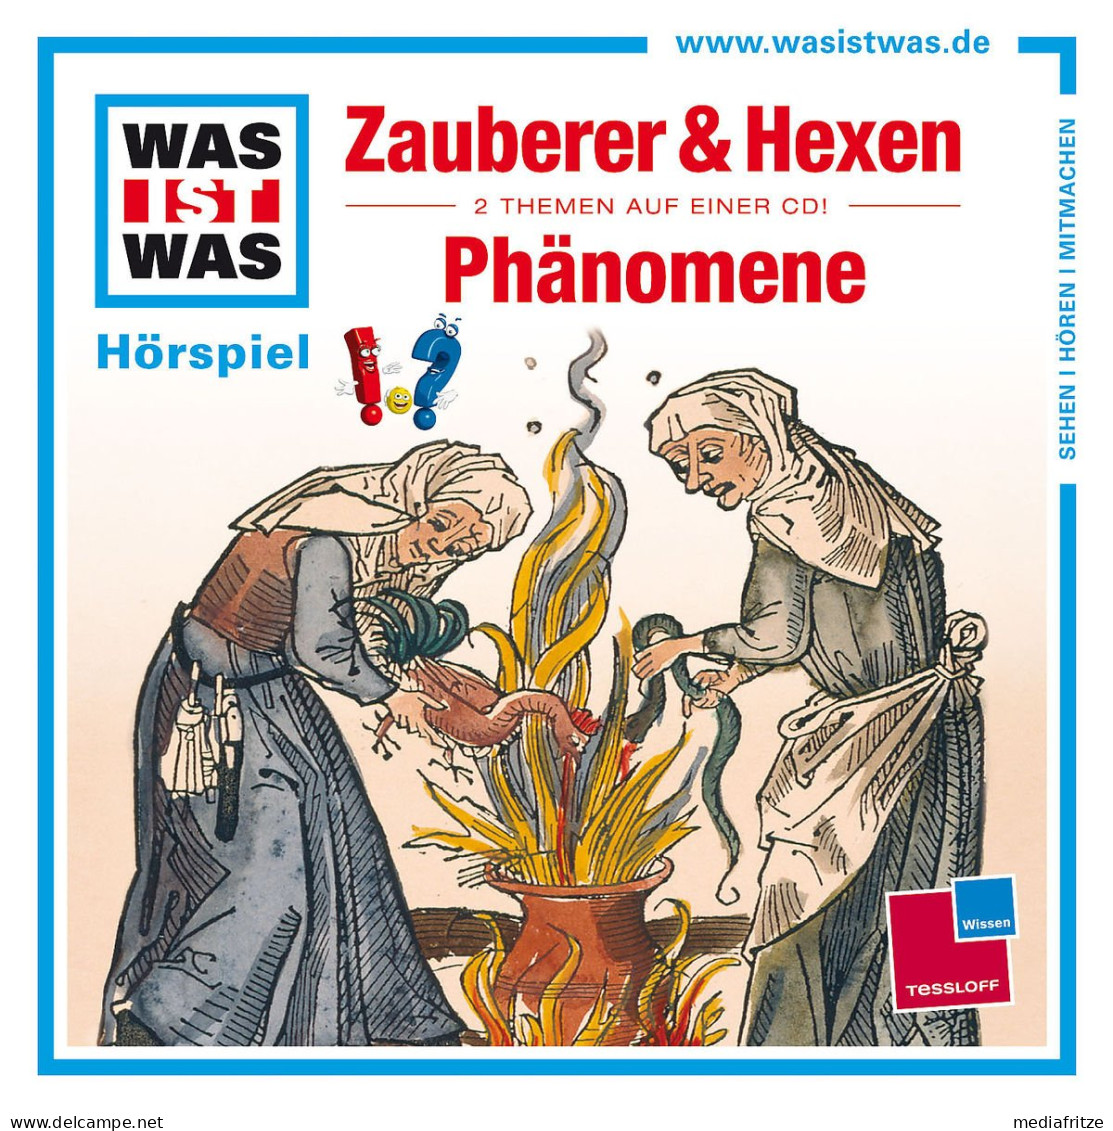 Folge 30: Zauberer & Hexen/Phänomene - Other Audio Books